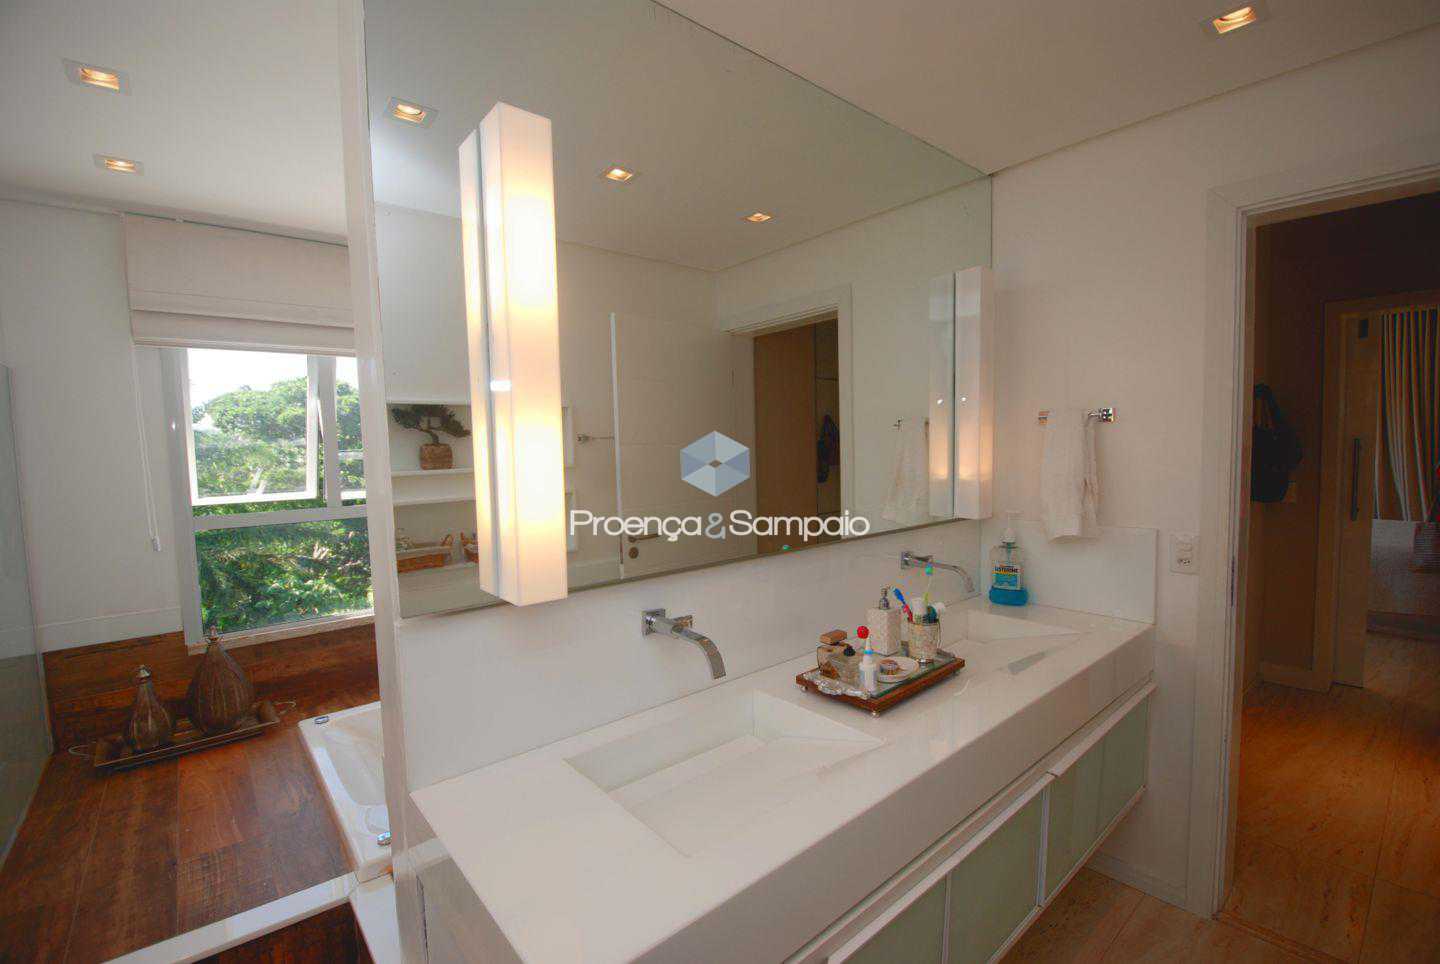 FOTO29 - Casa em Condomínio 4 quartos à venda Camaçari,BA - R$ 1.950.000 - PSCN40026 - 31